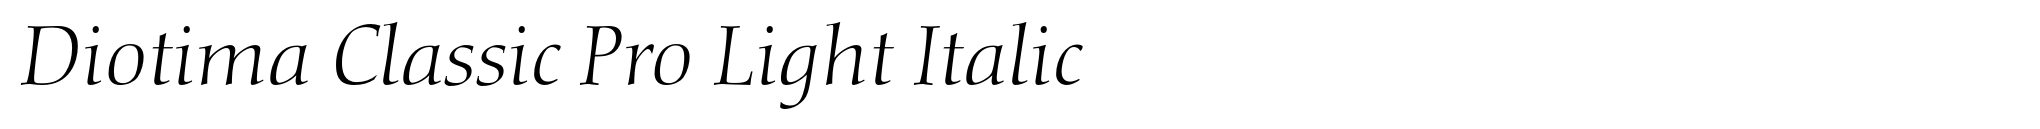 Diotima Classic Pro Light Italic image